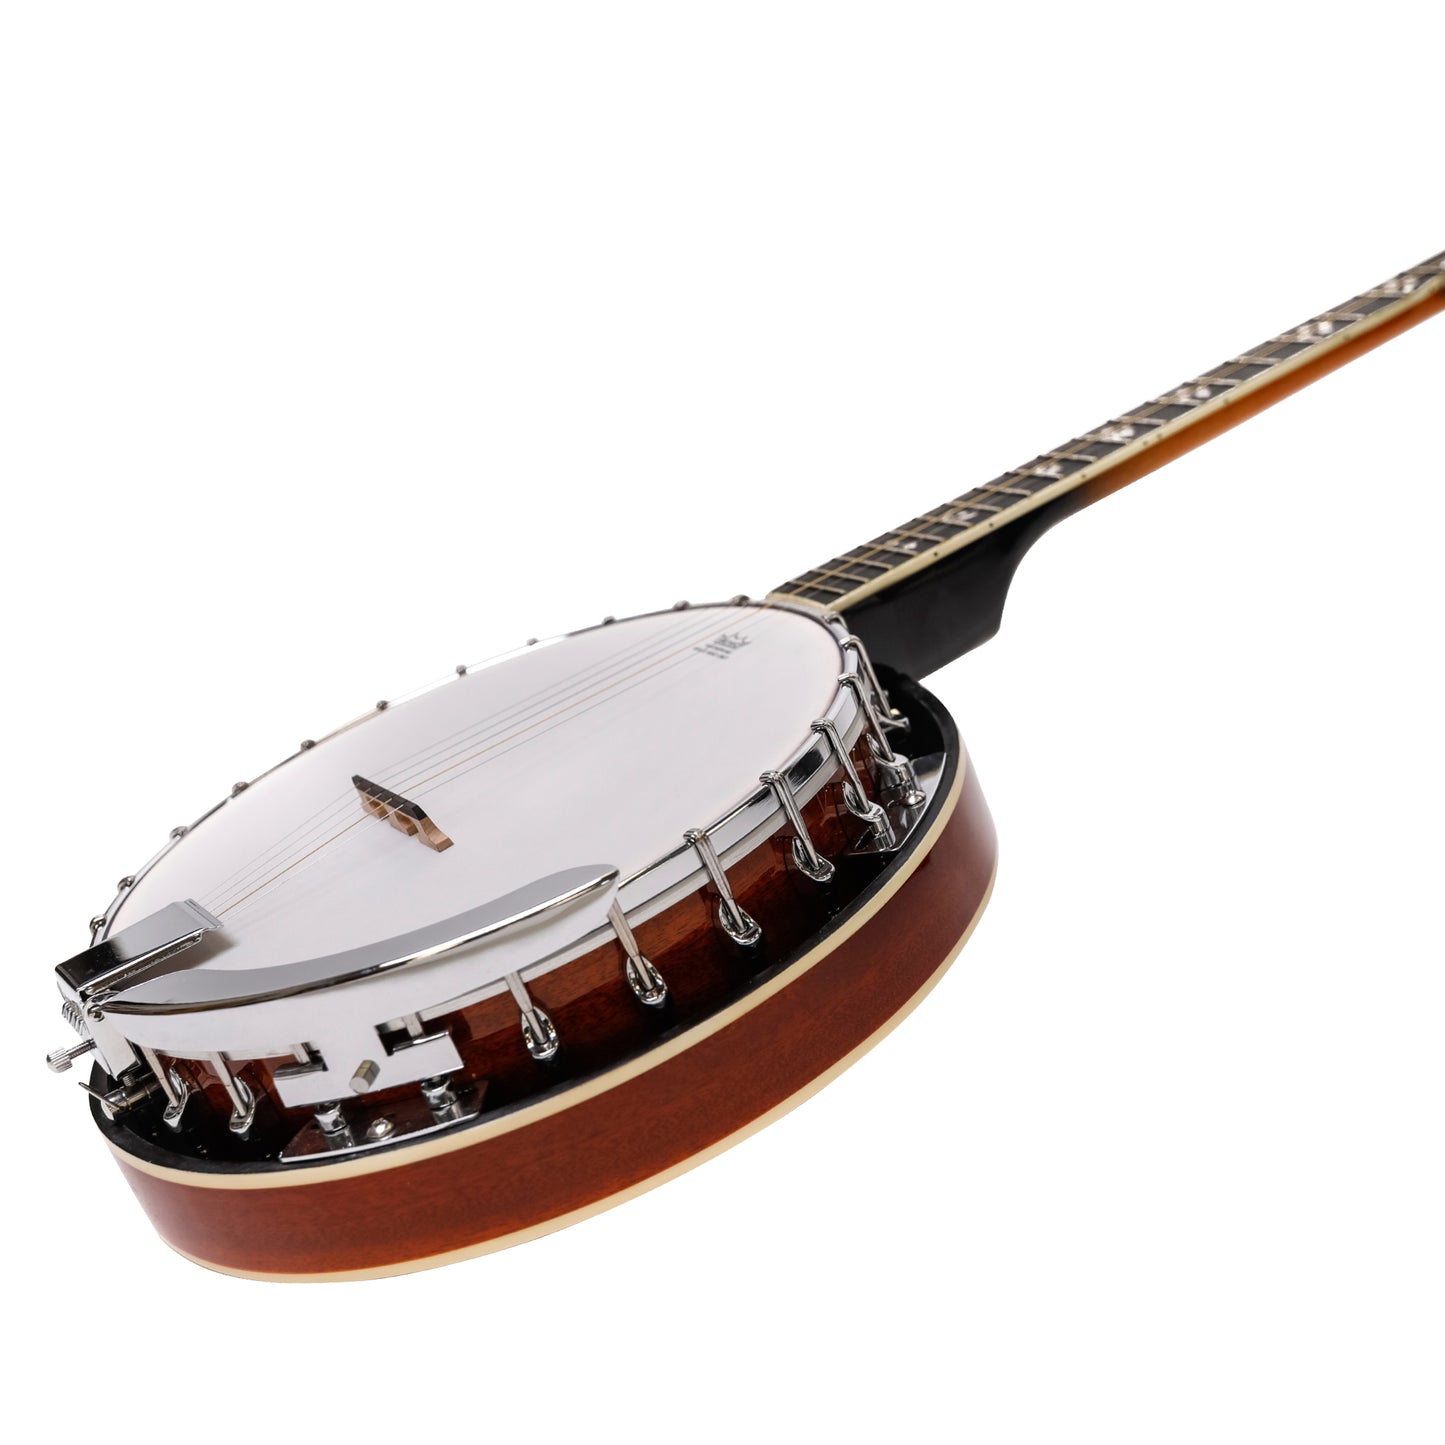 Heartland 5 String Irish Banjo Left Handed Player Series 24 Bracket con finitura chiusa a raggi di sole